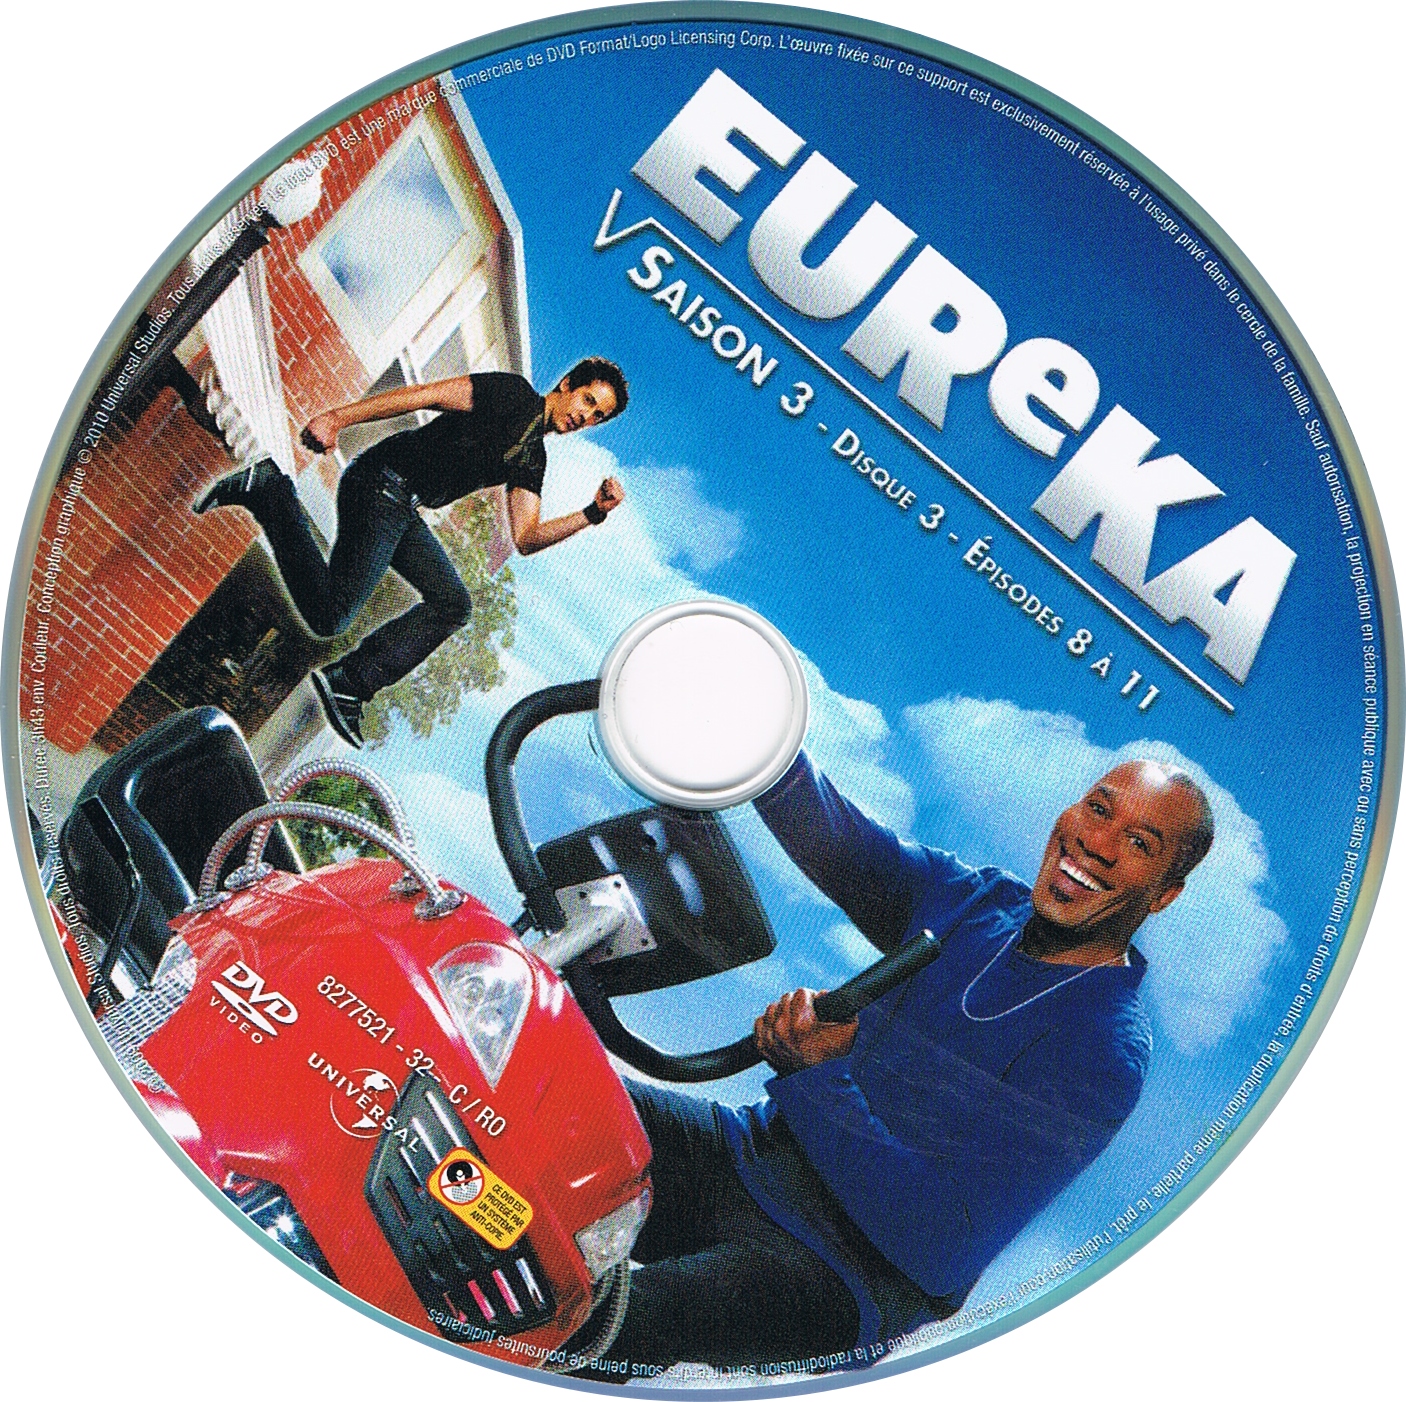 Eureka saison 3 DISC 3